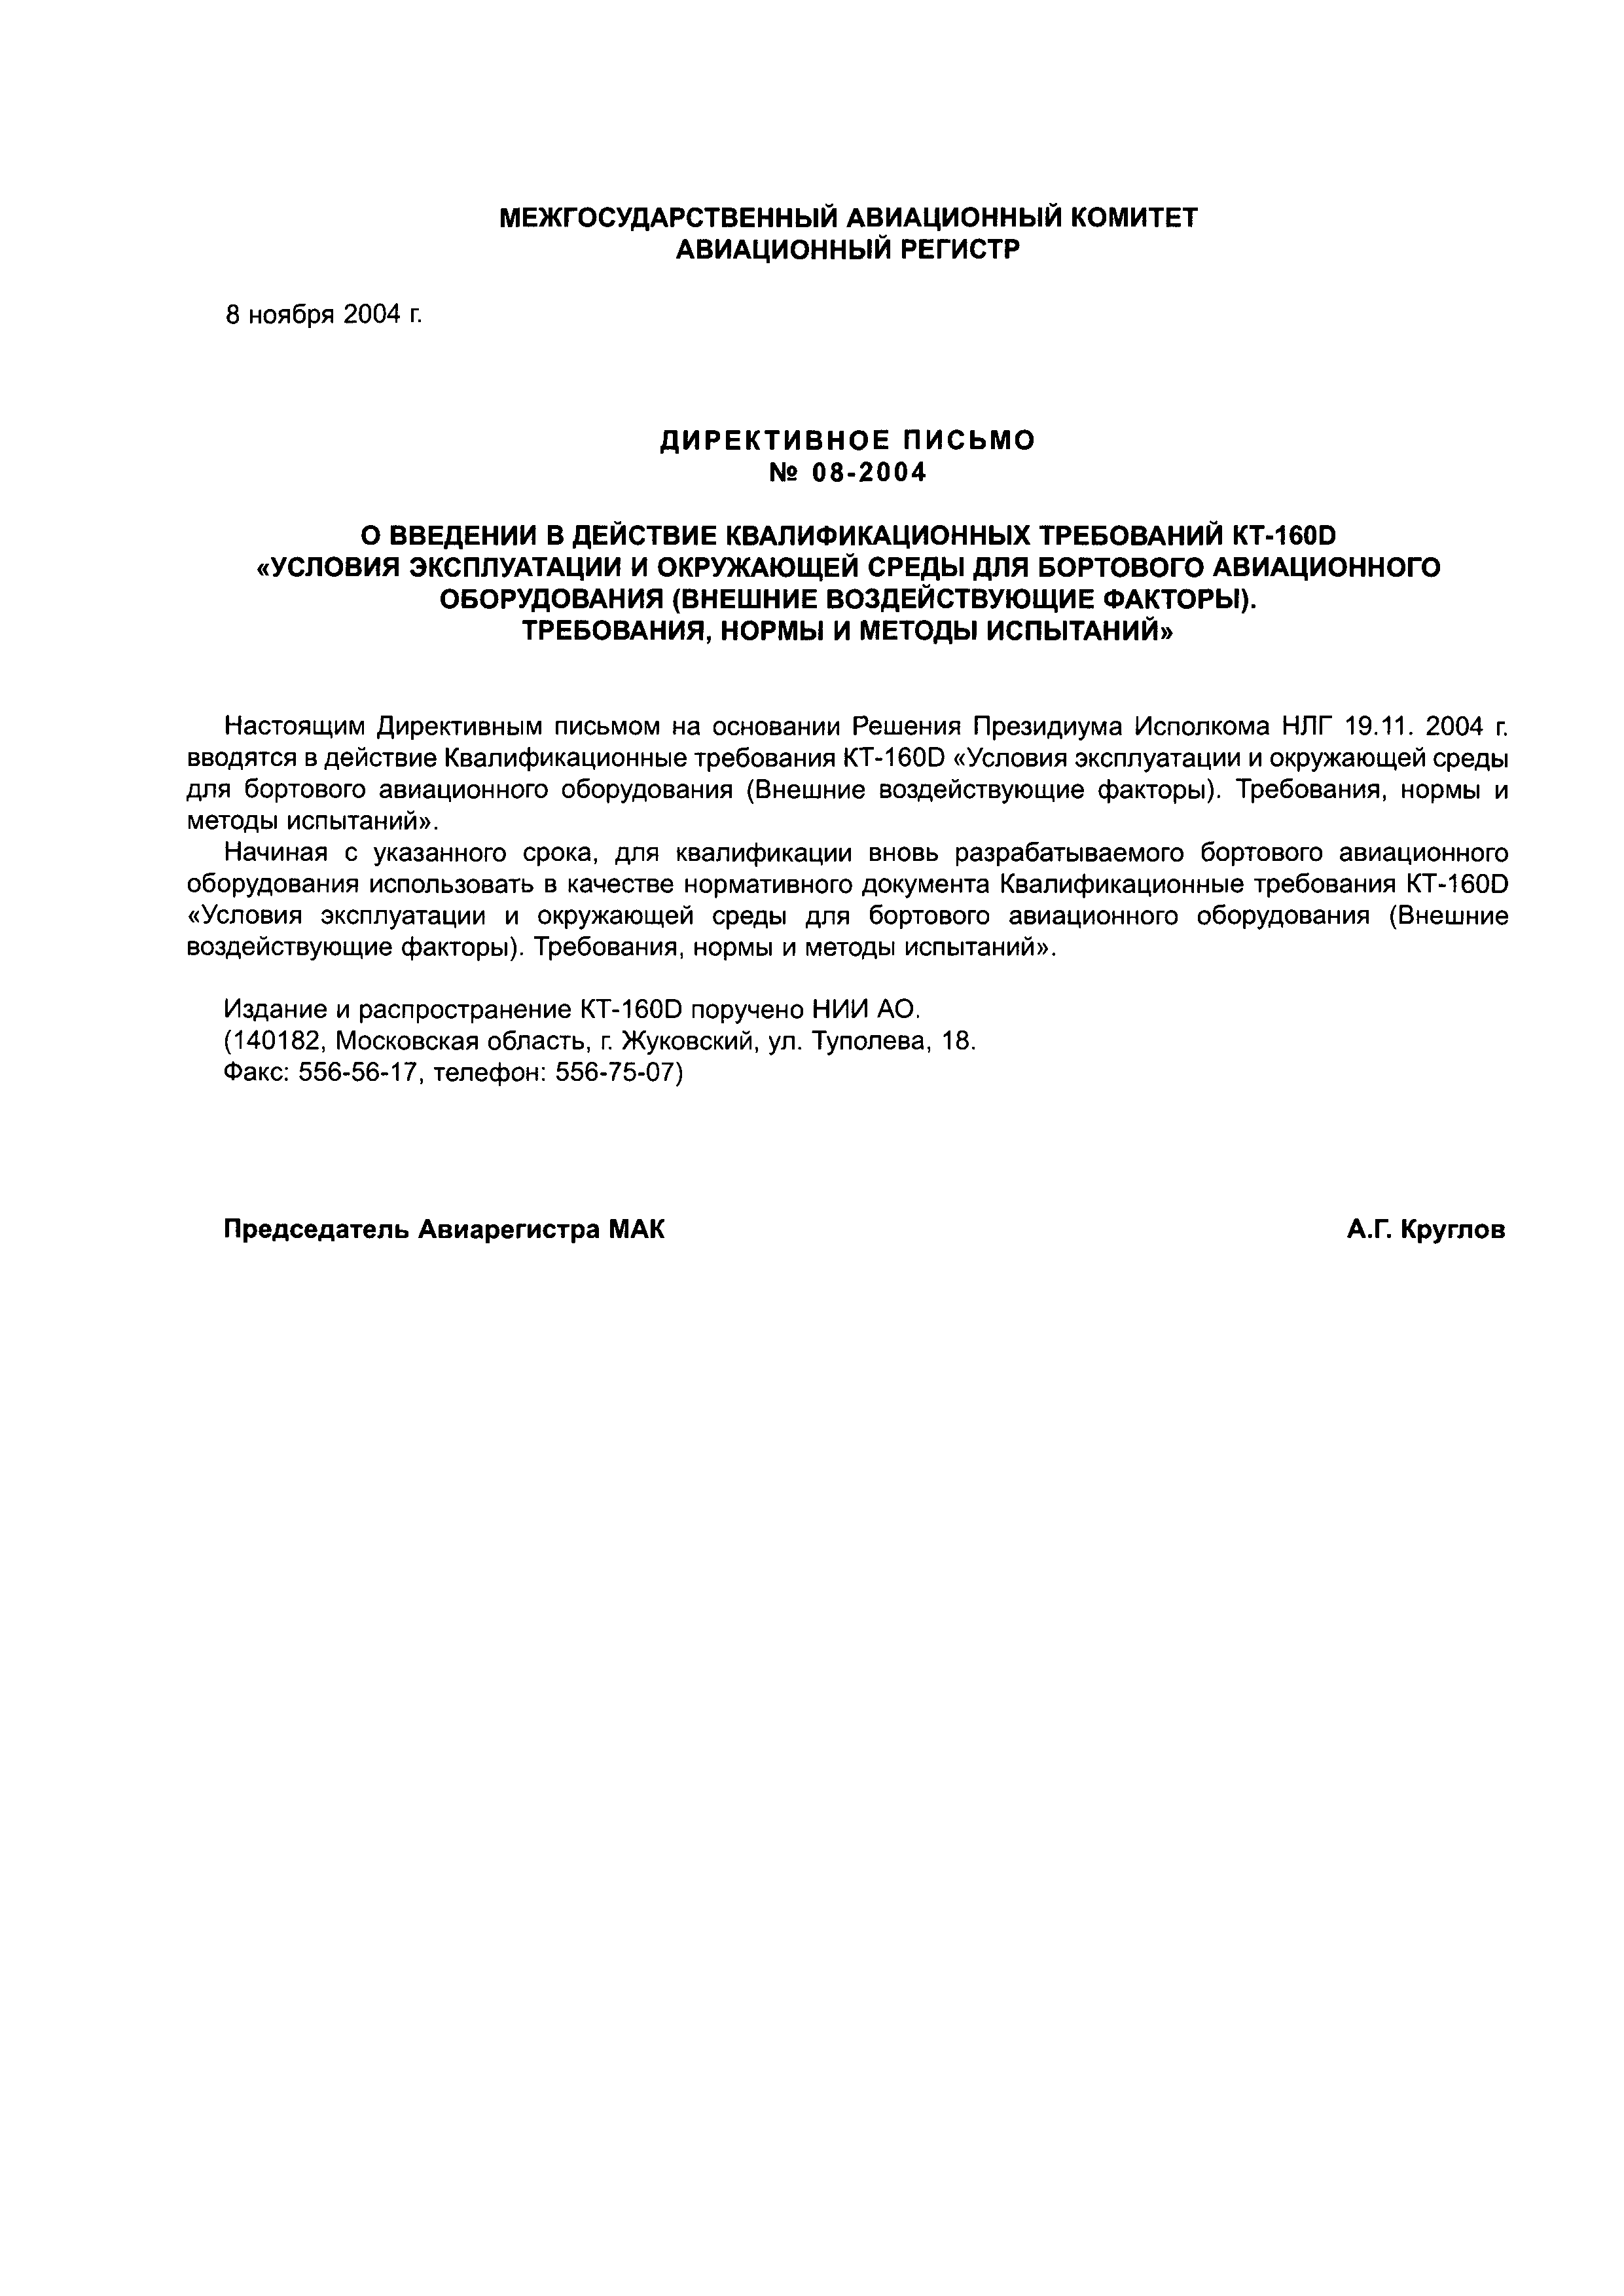 Директивное письмо 08-2004